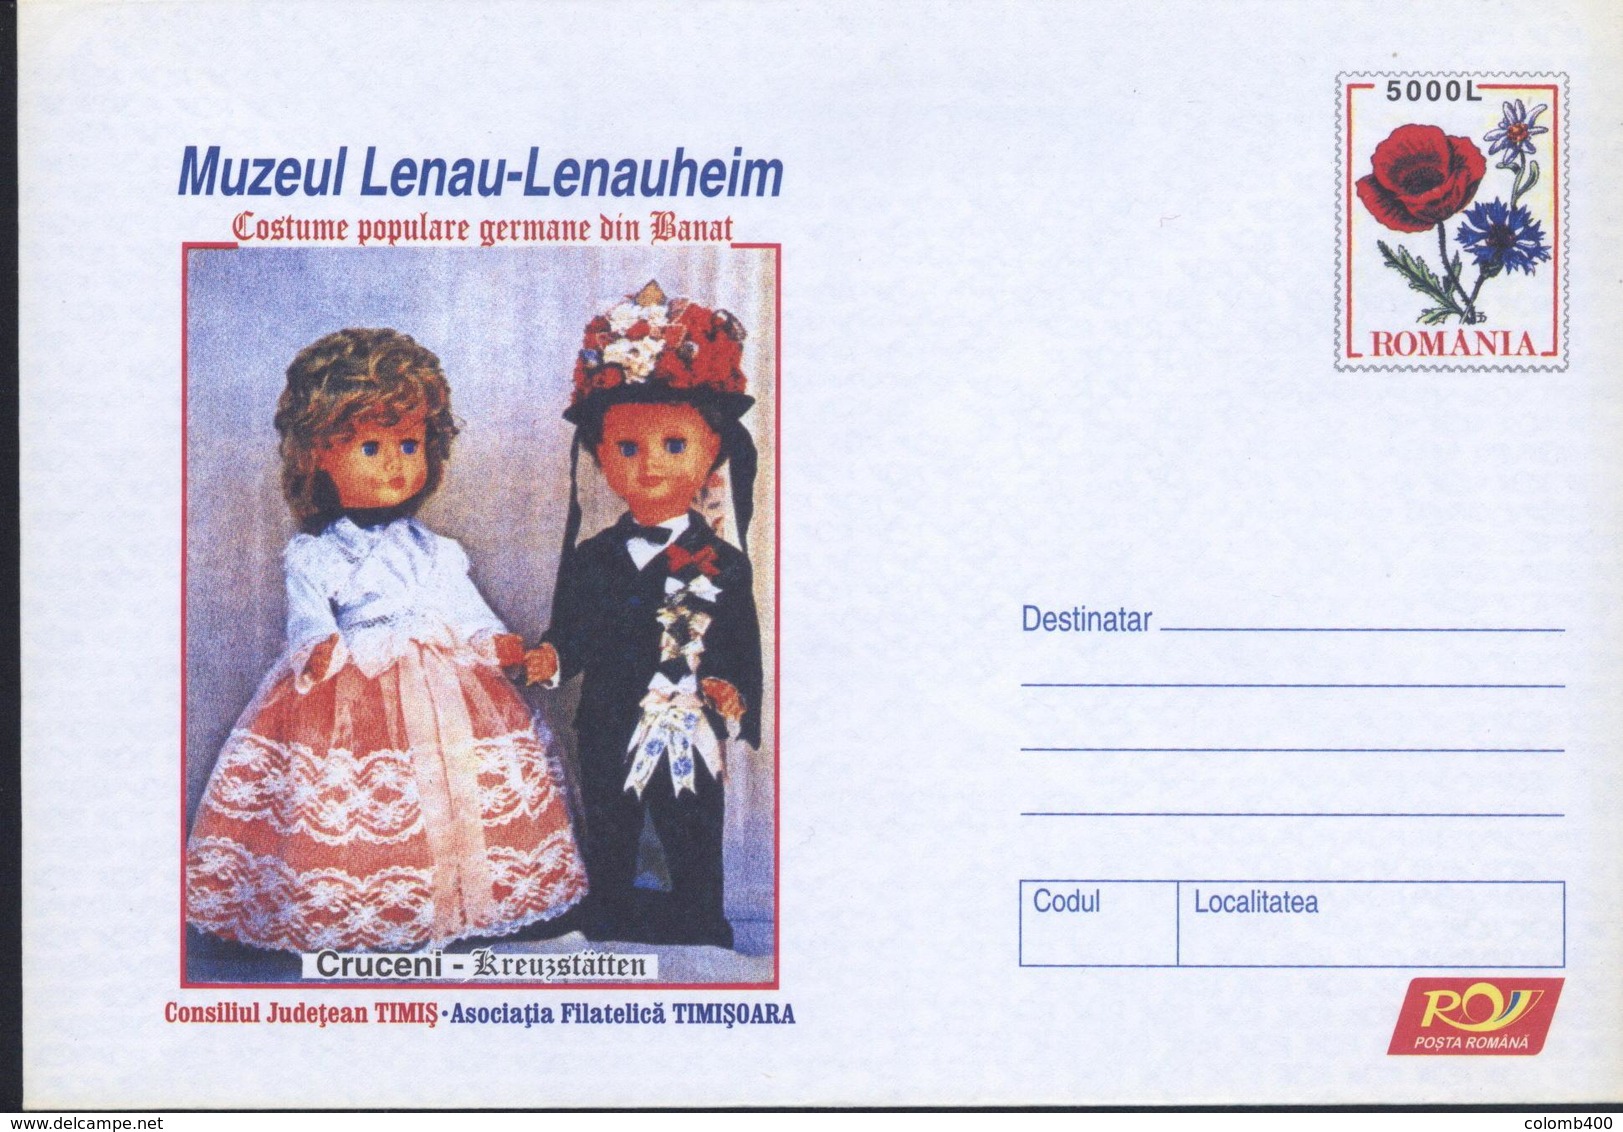 Poupees En Costume Traditionnel,Pavot / Papaver,Edelweiss  Entier Postal - Roumanie / Romania 2005 - Puppen